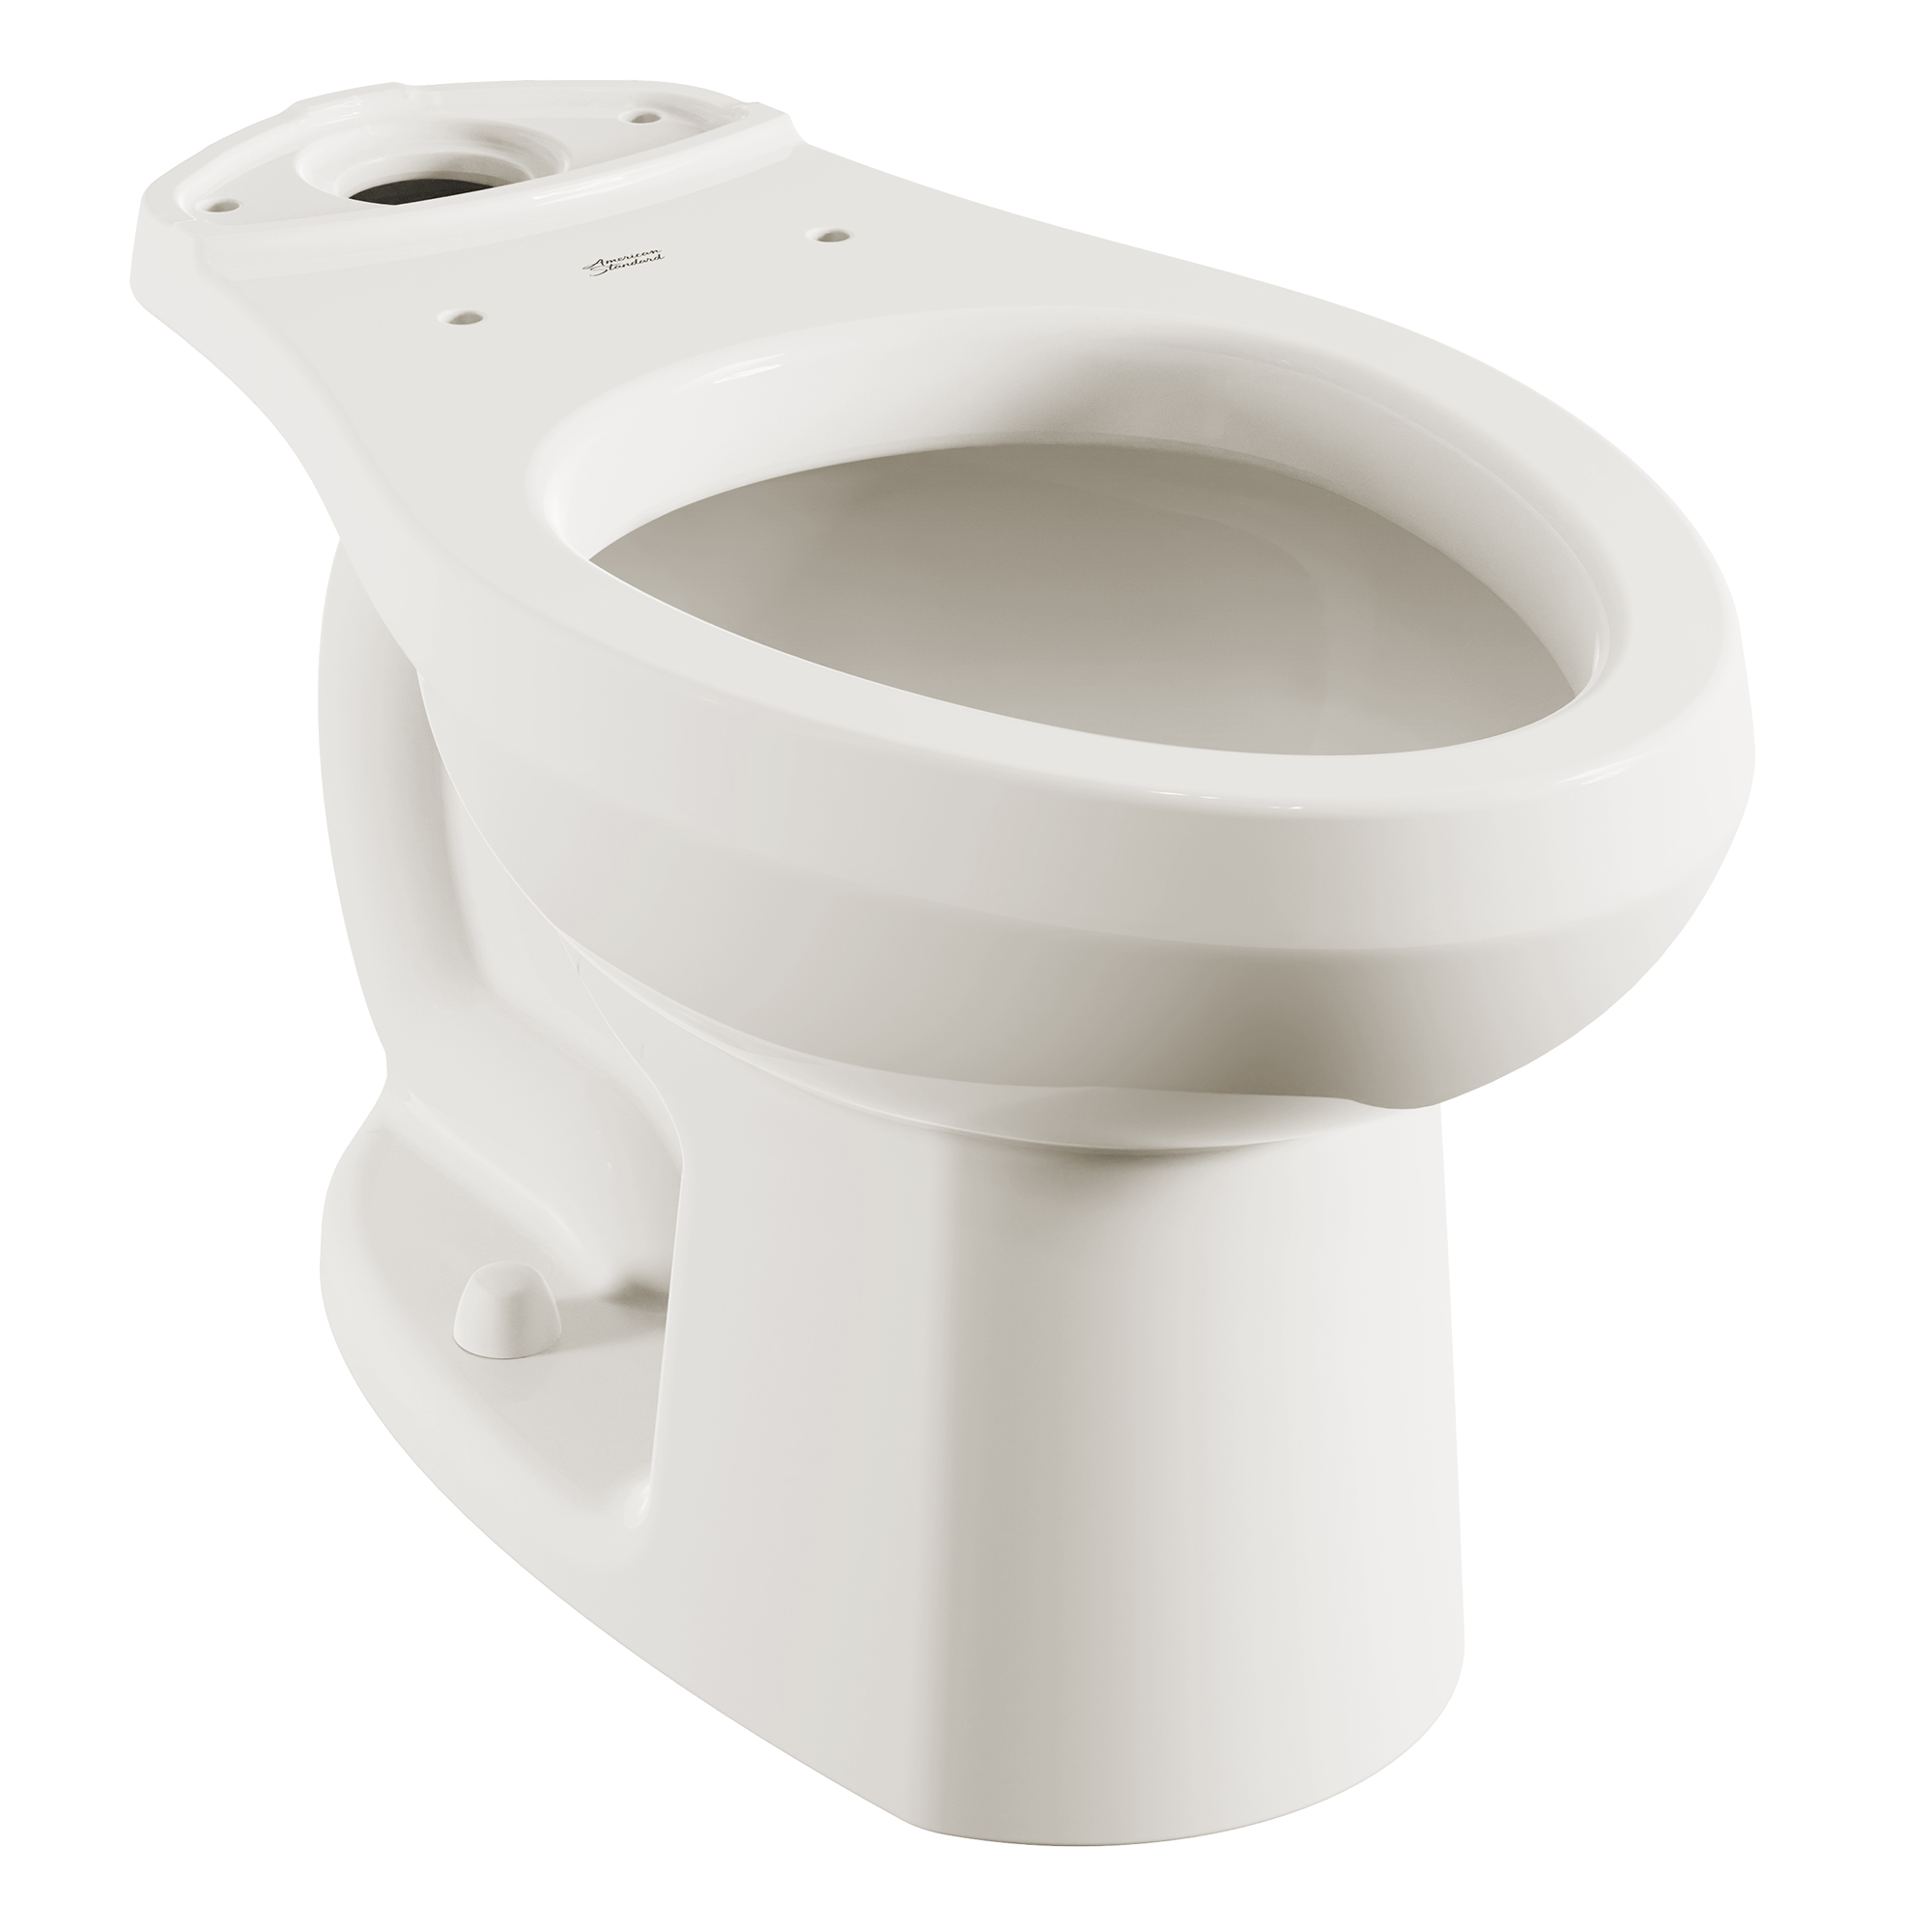 Toilettes H2Option et H2Optimum, à cuvette allongée à hauteur régulière, sans siège